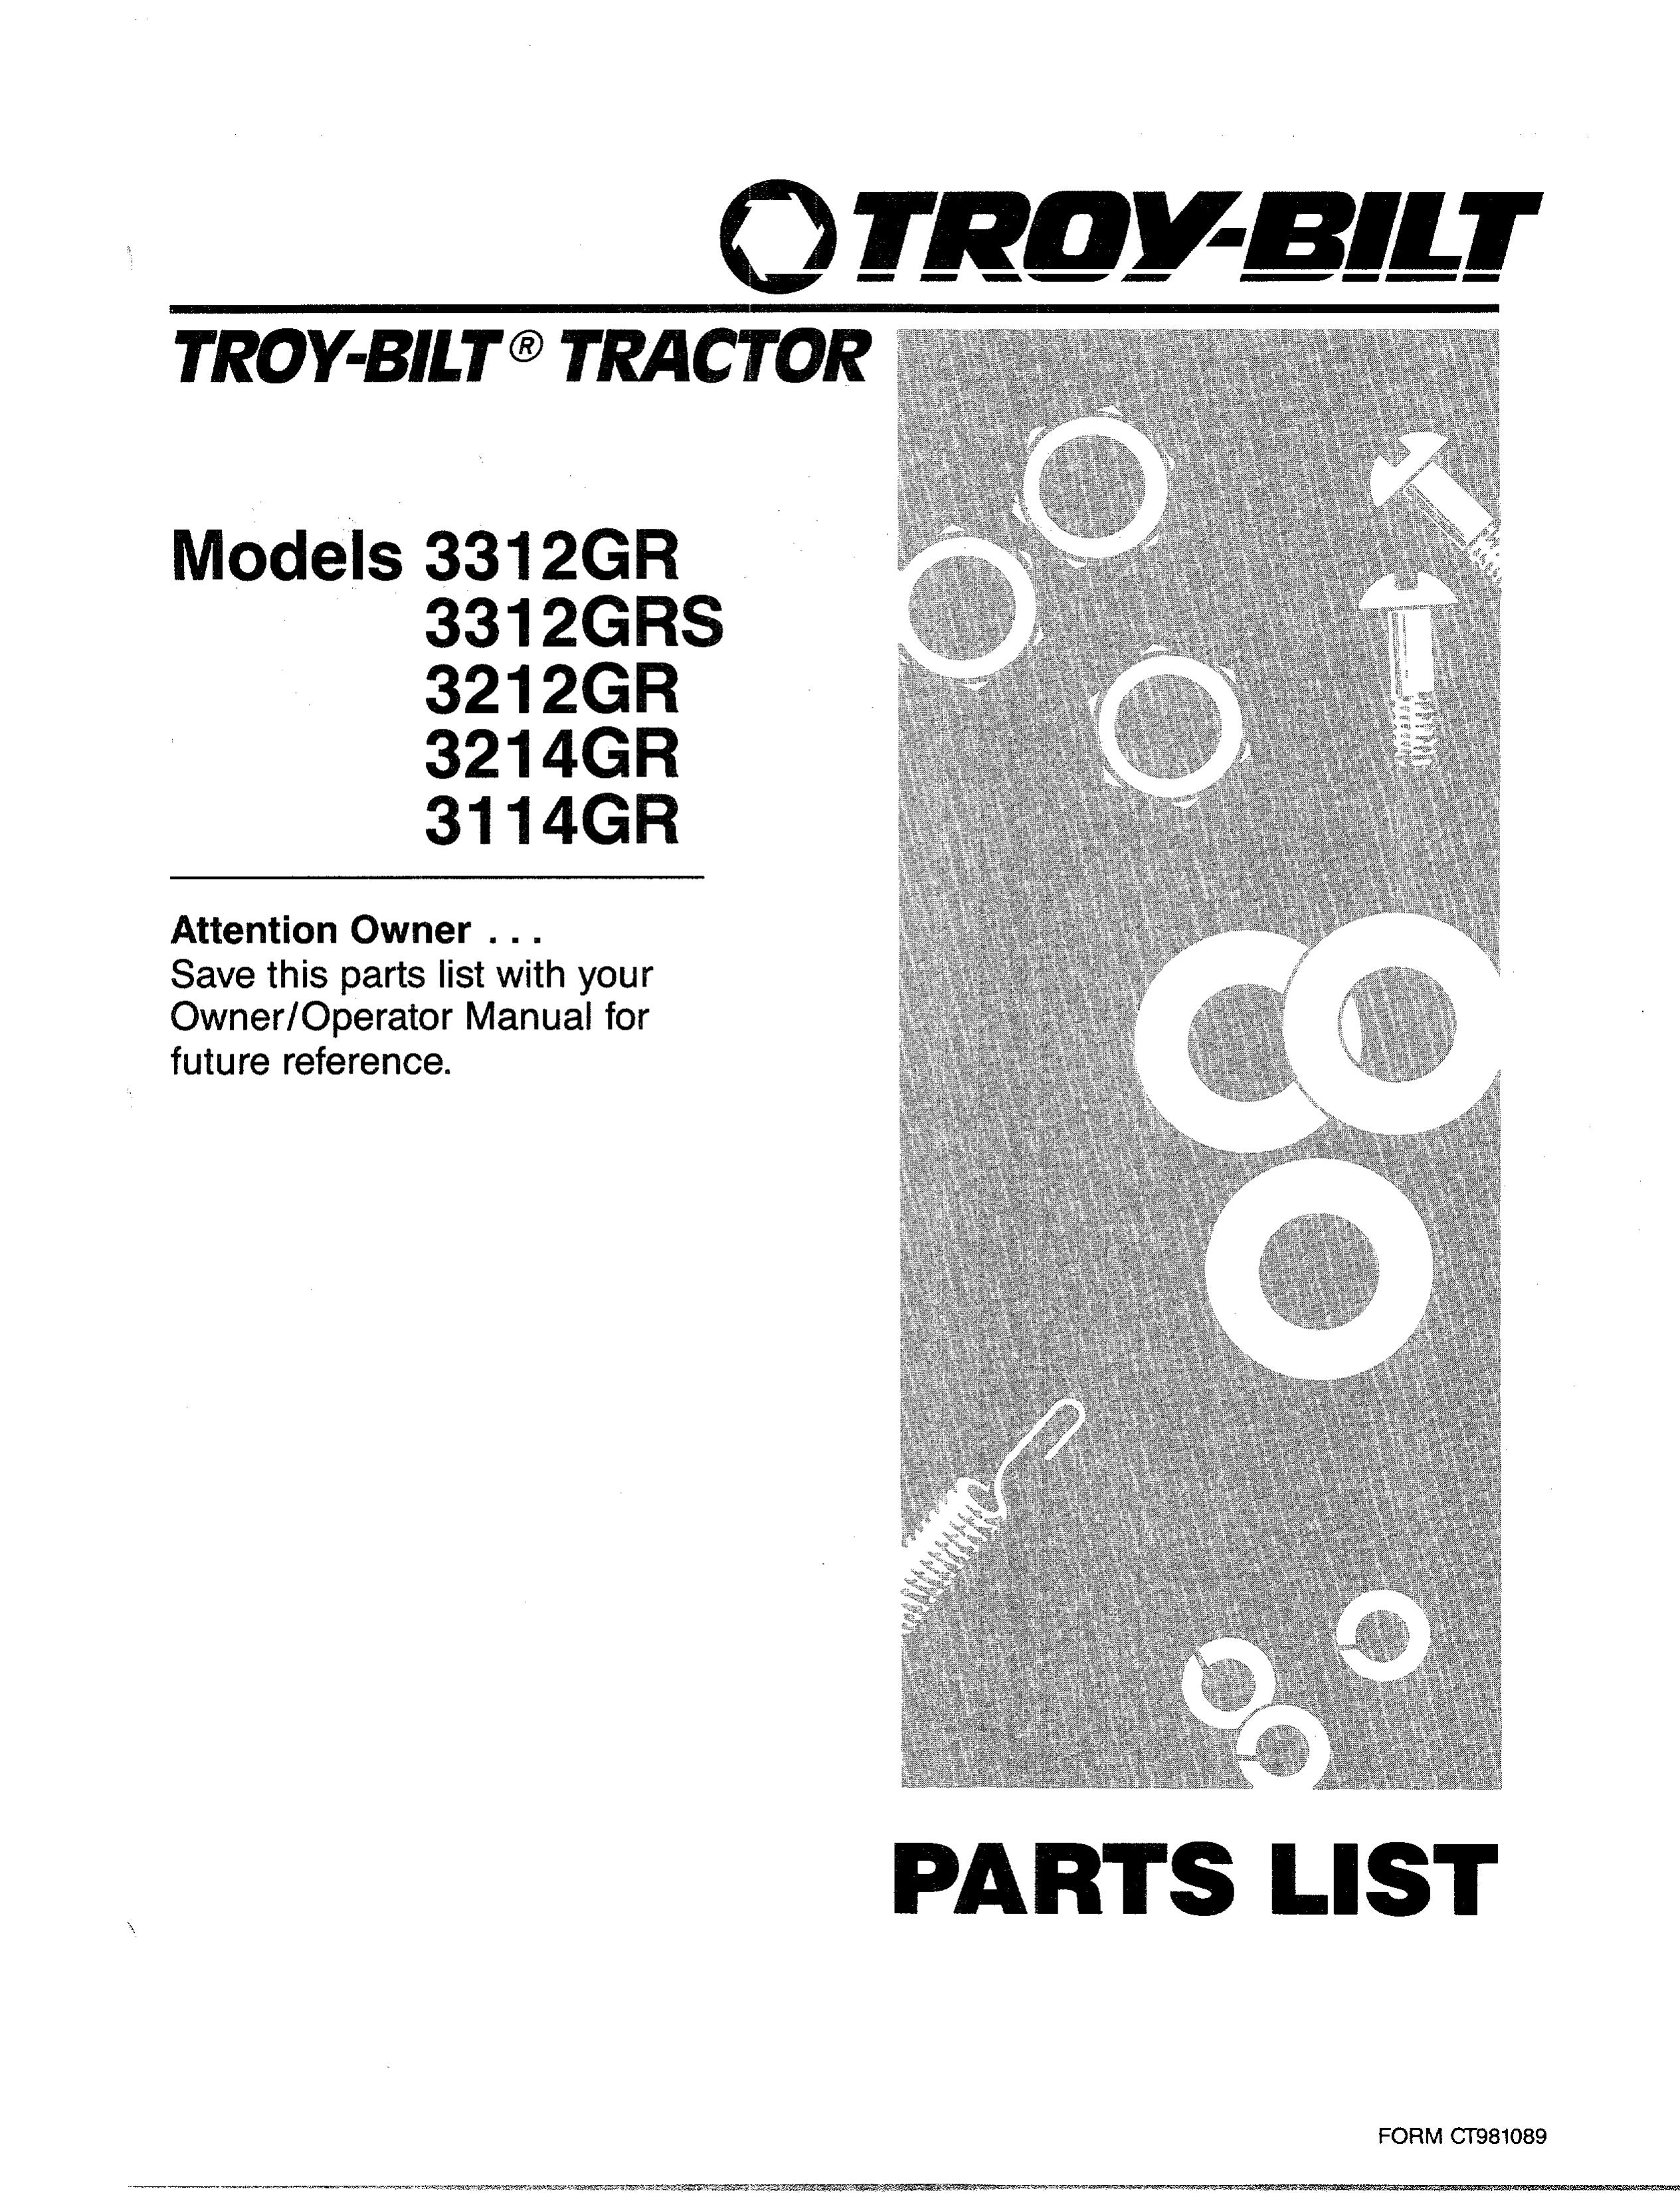 Troy-Bilt 3312GR Lawn Mower User Manual